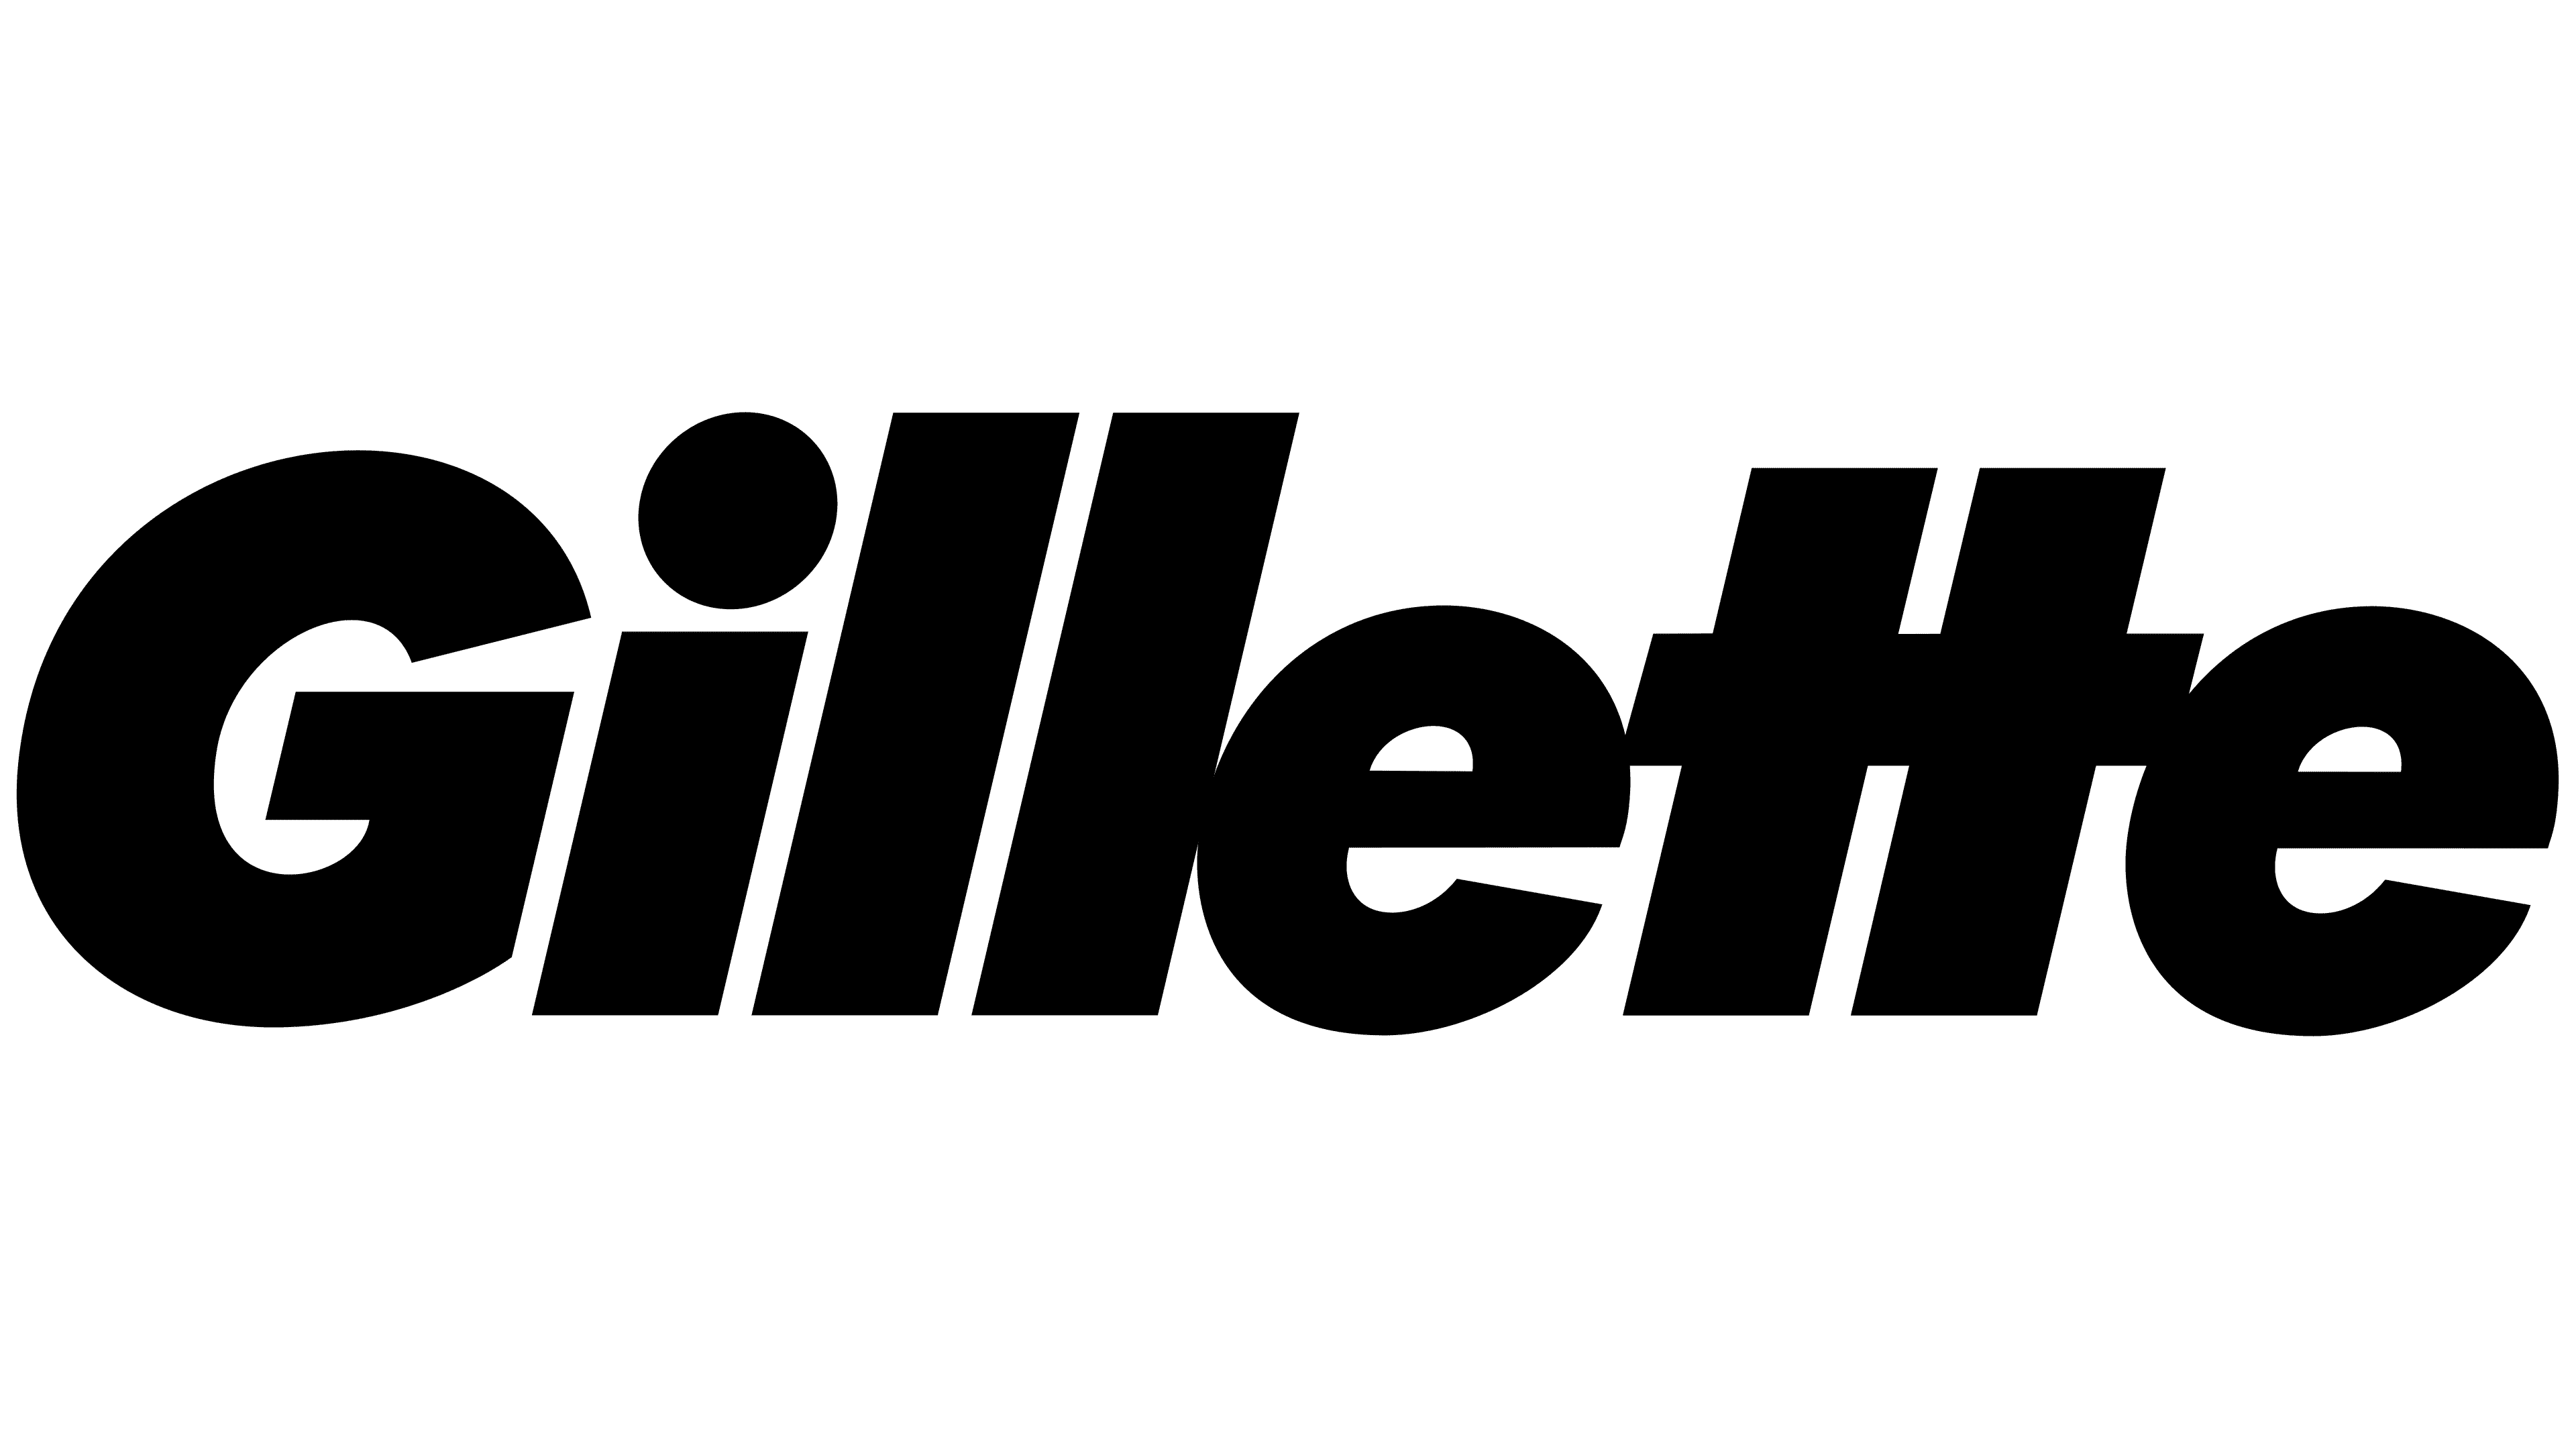 Gillette Logo | Symbol, History, PNG (3840*2160)